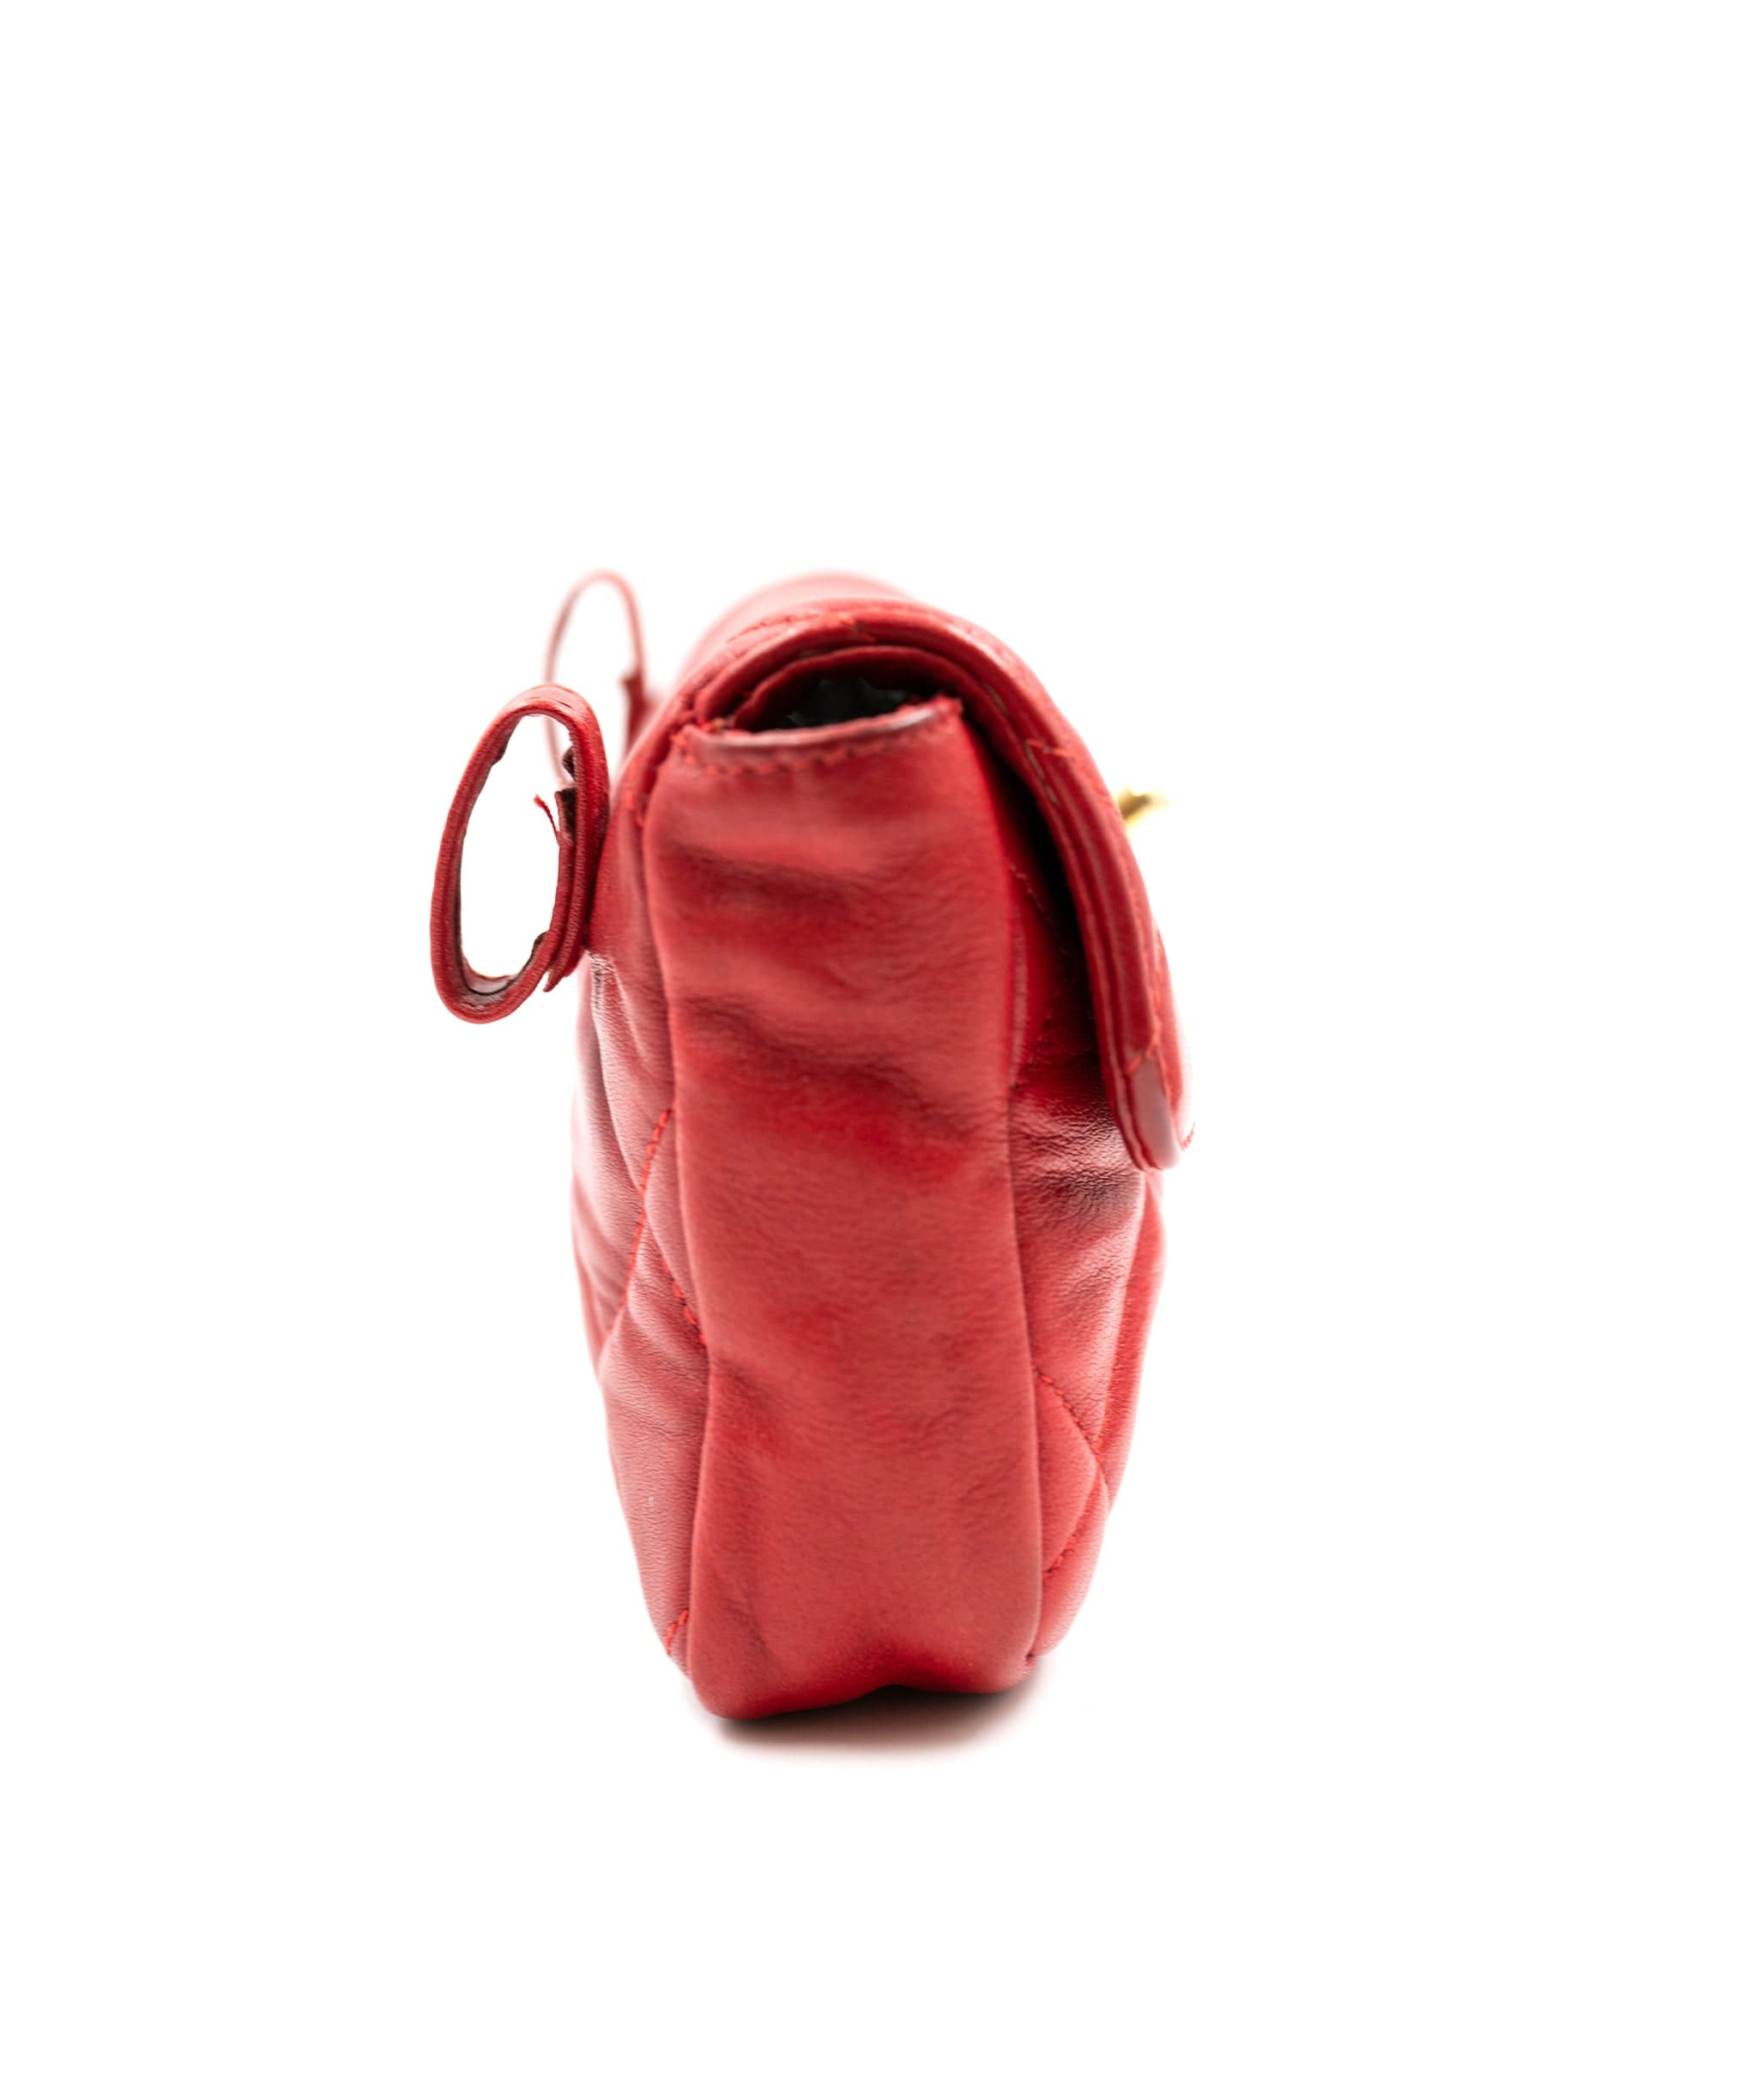 Chanel Chanel Red Lambskin CC Turnlock Waist Bag GHW  - AGL2050